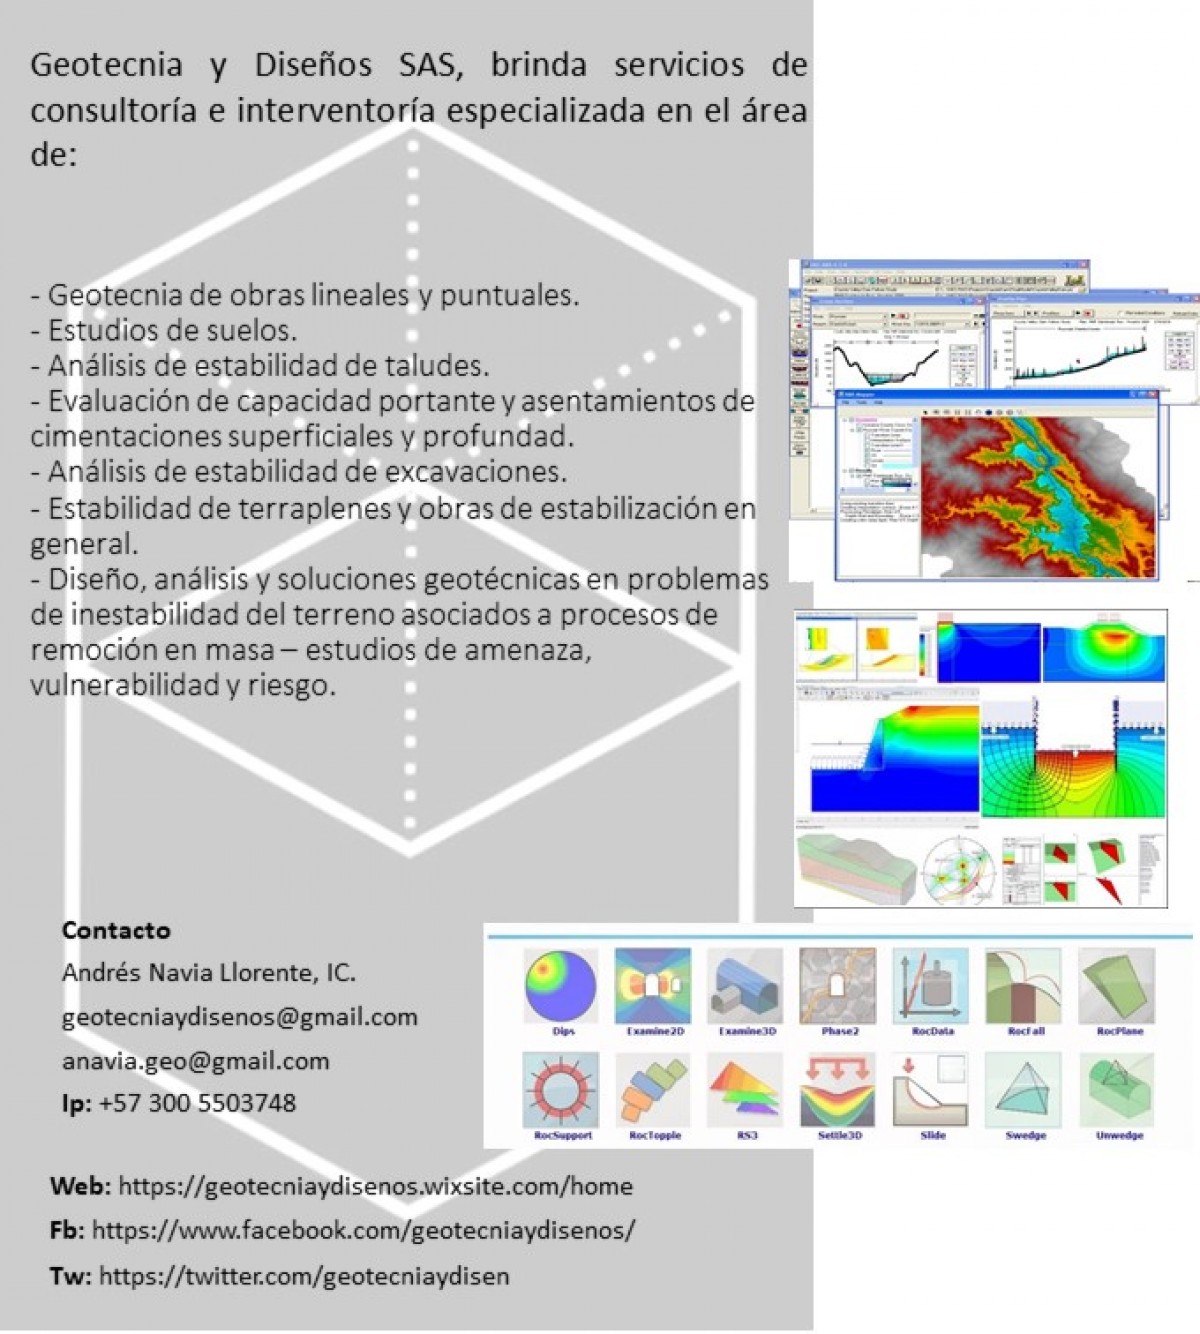 Geotecnia y Diseños SAS